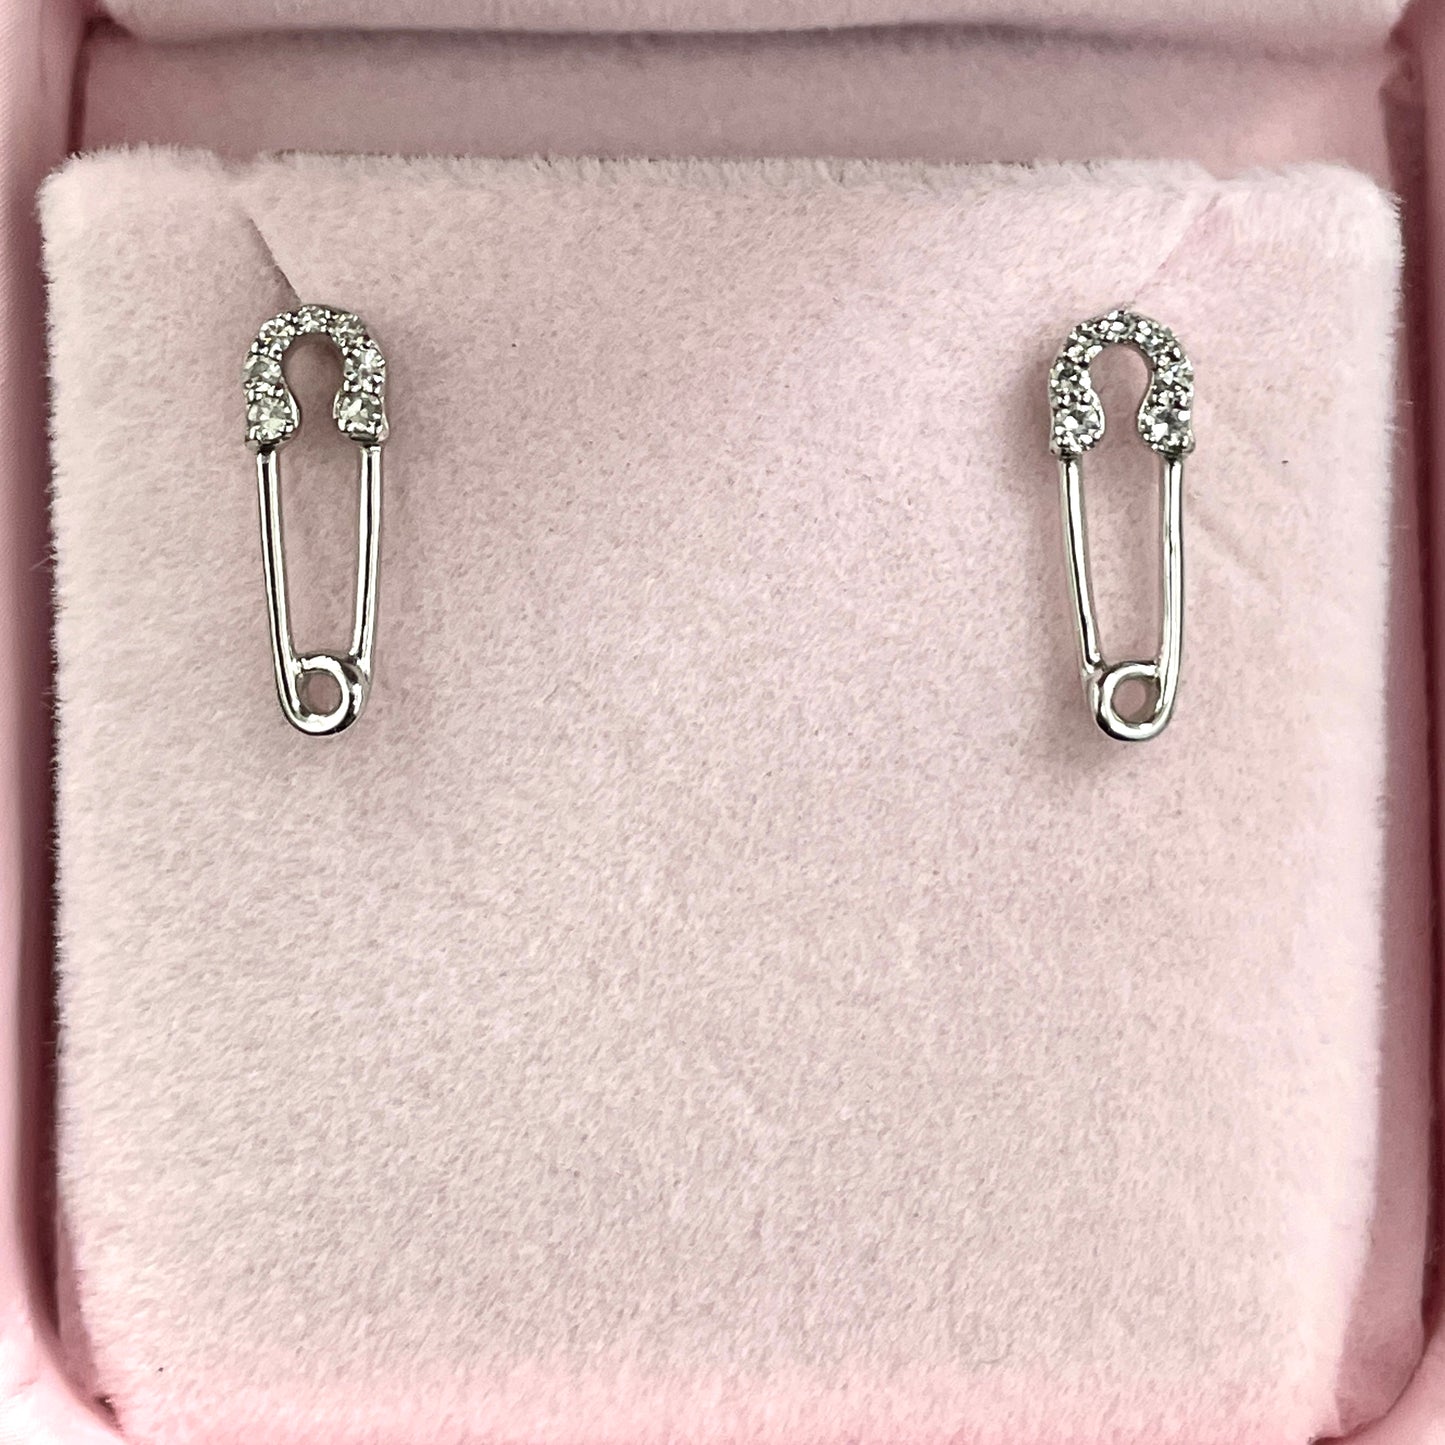 Mini Safety Pin Earrings - Happy Jewelers Fine Jewelry Lifetime Warranty